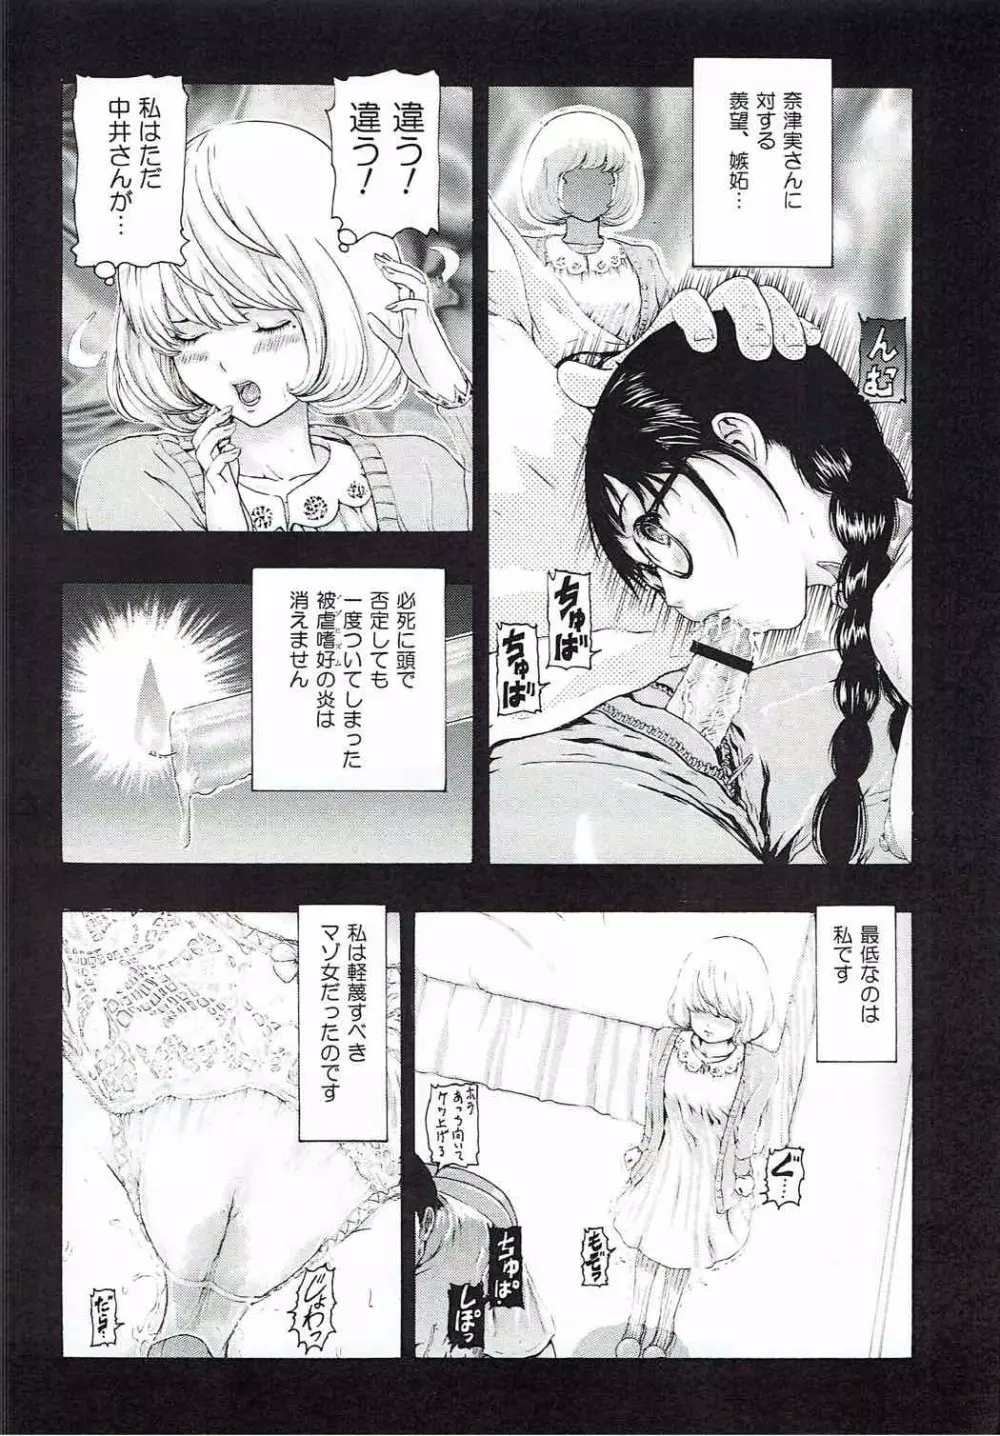 [け゜ぴけ゜ぴ (ぬャカな)] MANKOKU漫画家(とアシスタント)残酷物語 (バクマン。) 19ページ